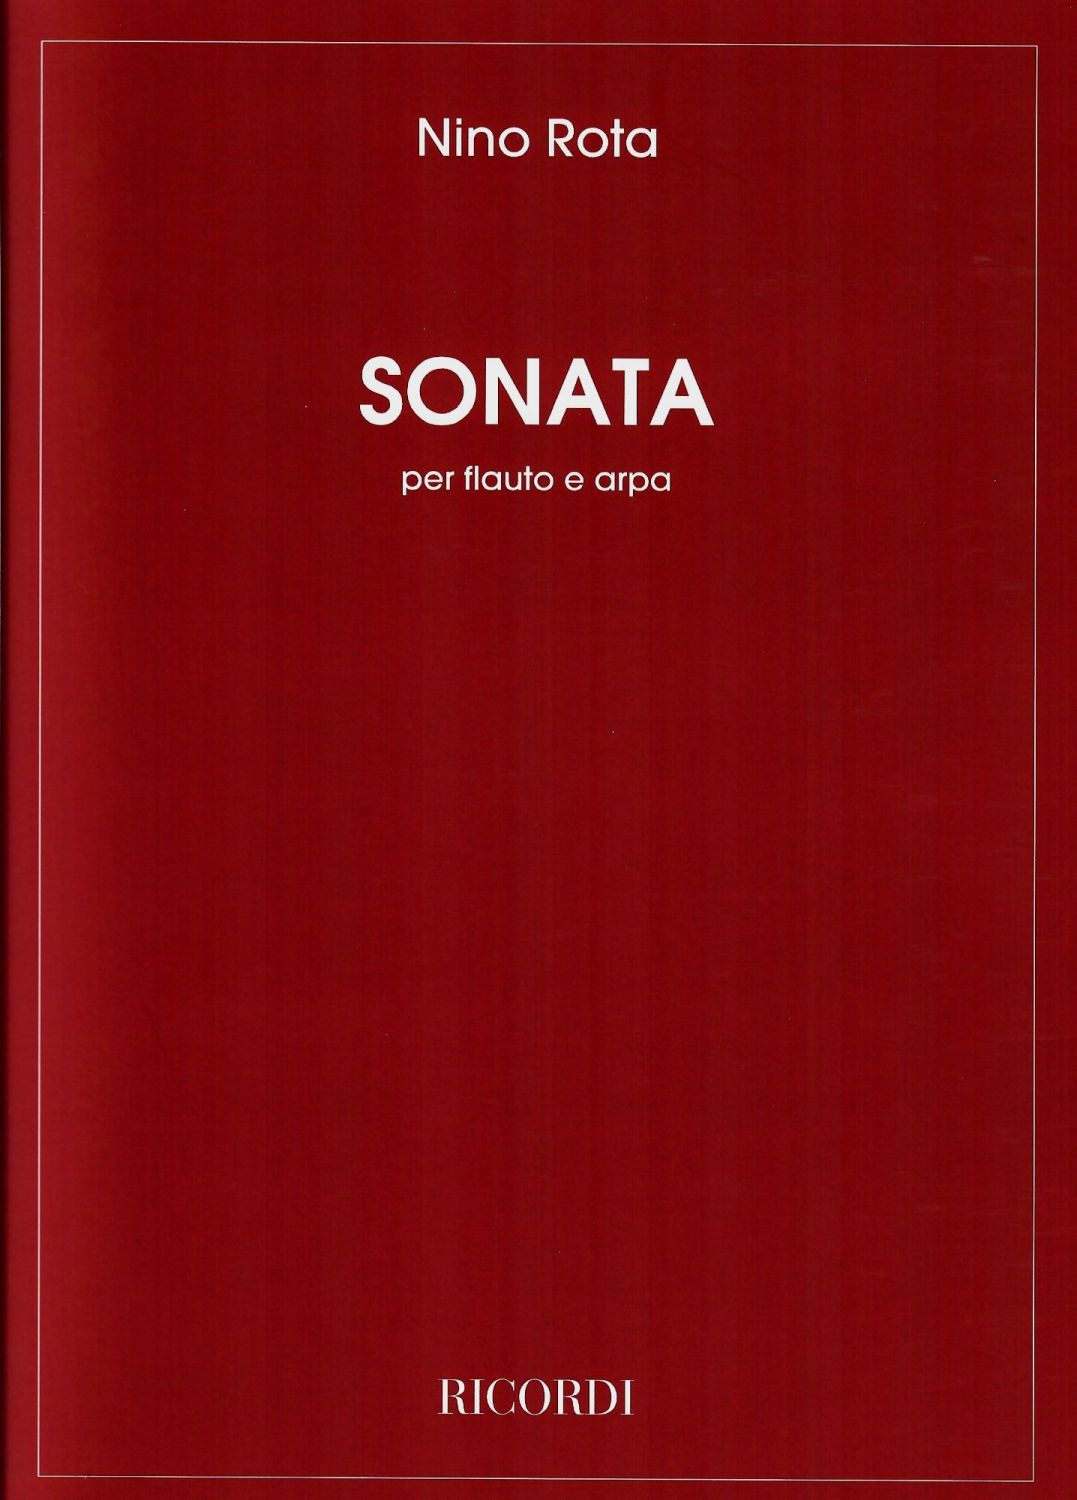 Sonata for Harp & Flute - Nino Rota